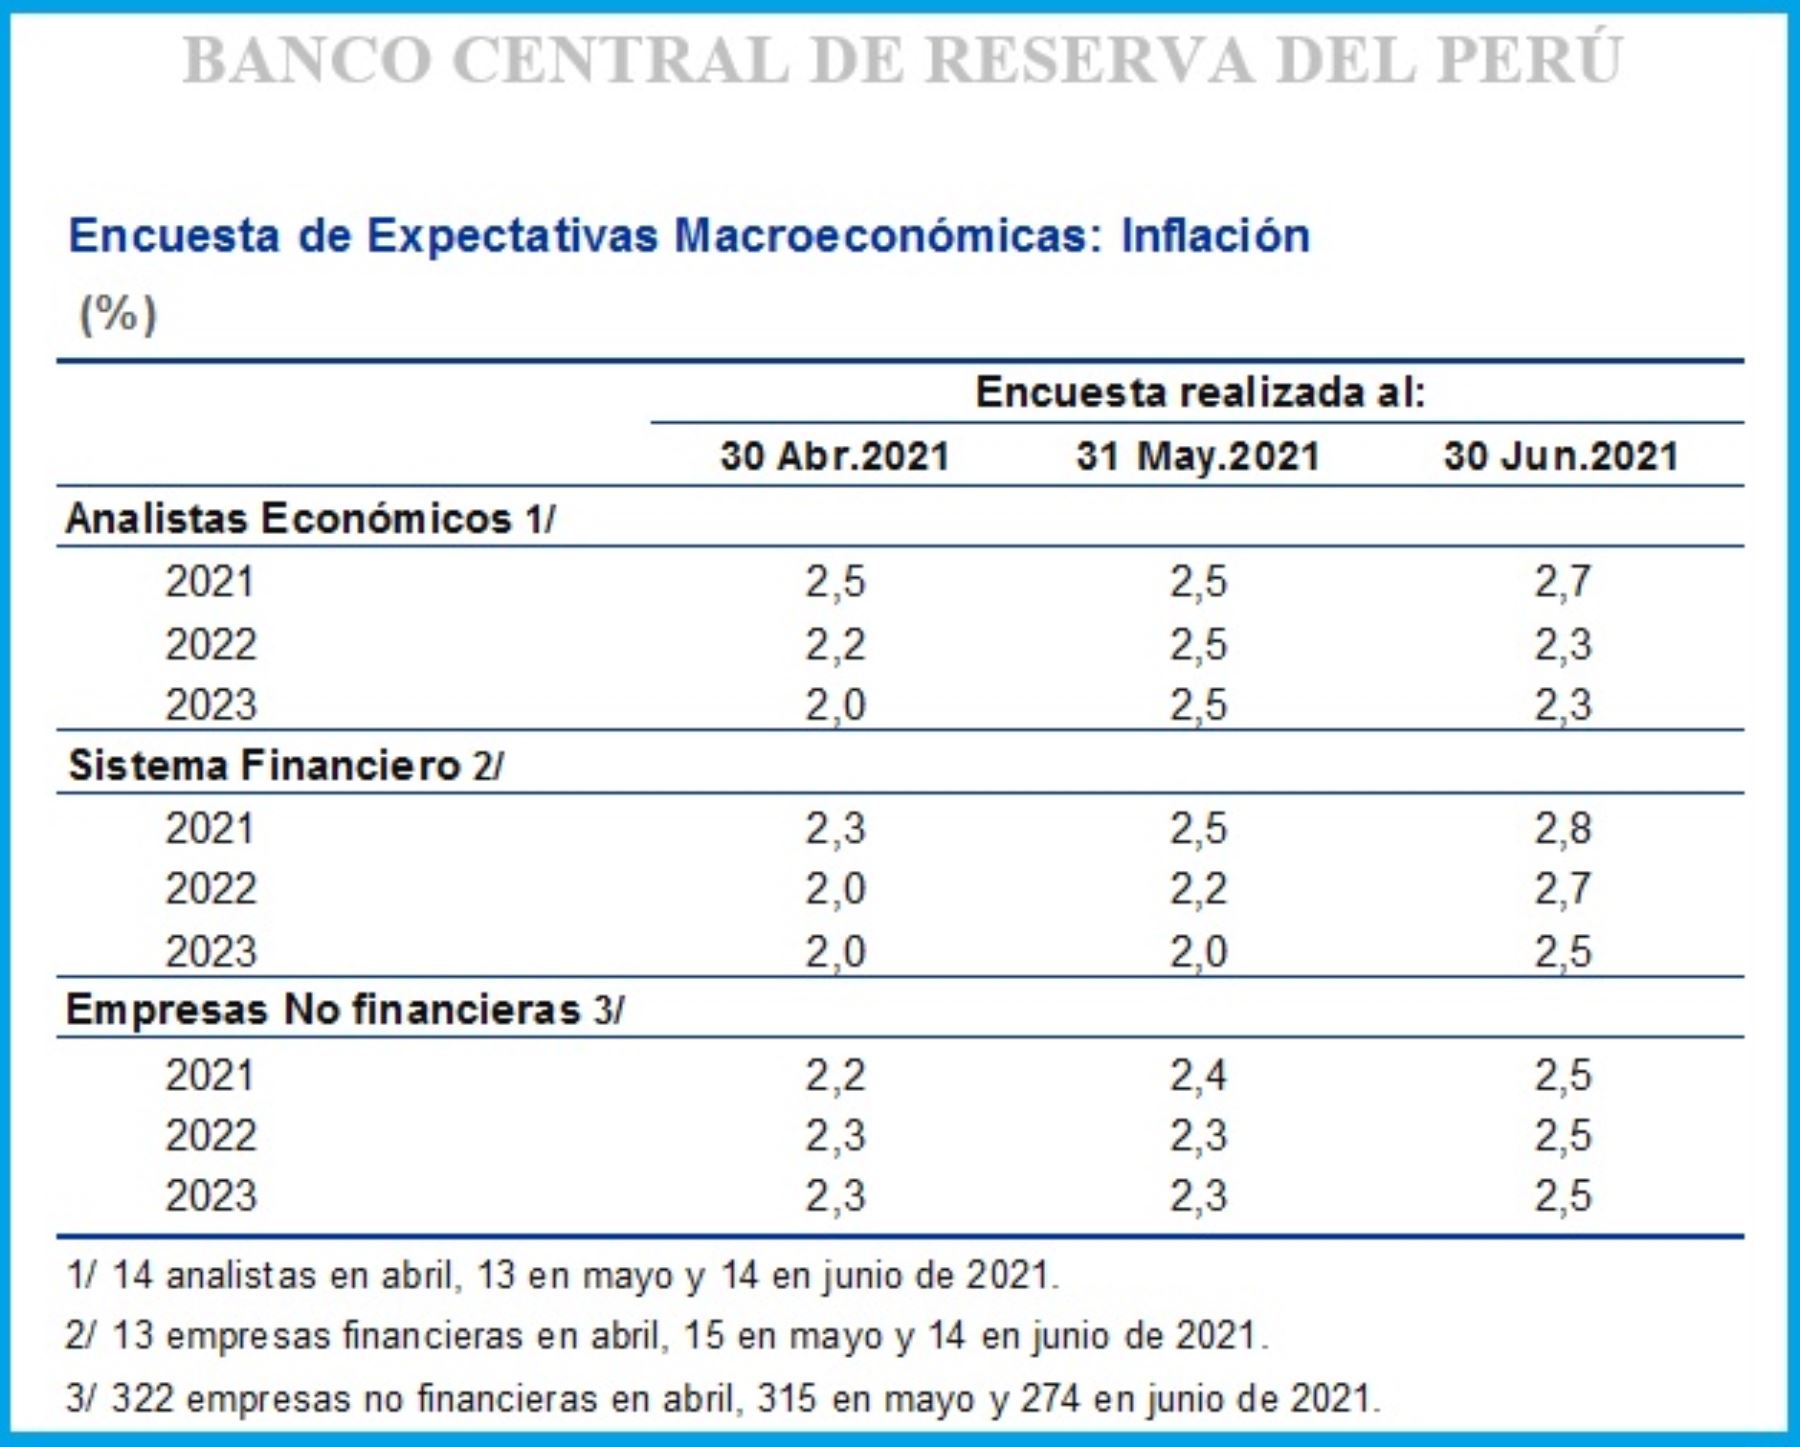 Encuesta de Expectativas Macroeconómicas: Inflación